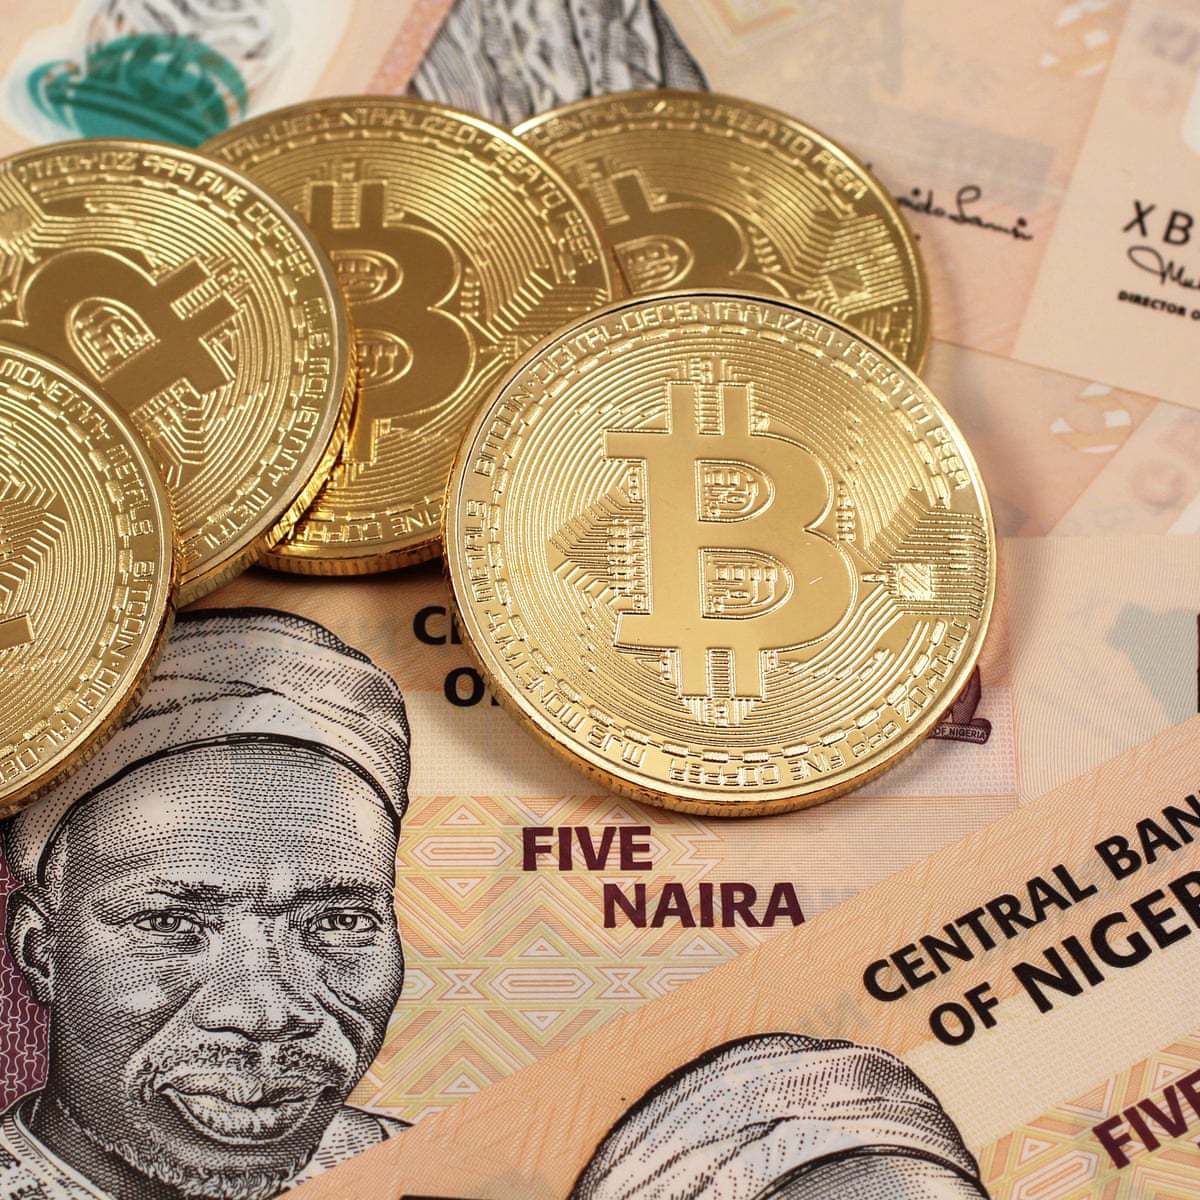 Bitcoin distrugge la moneta nigeriana e sale di valore - The Cryptonomist